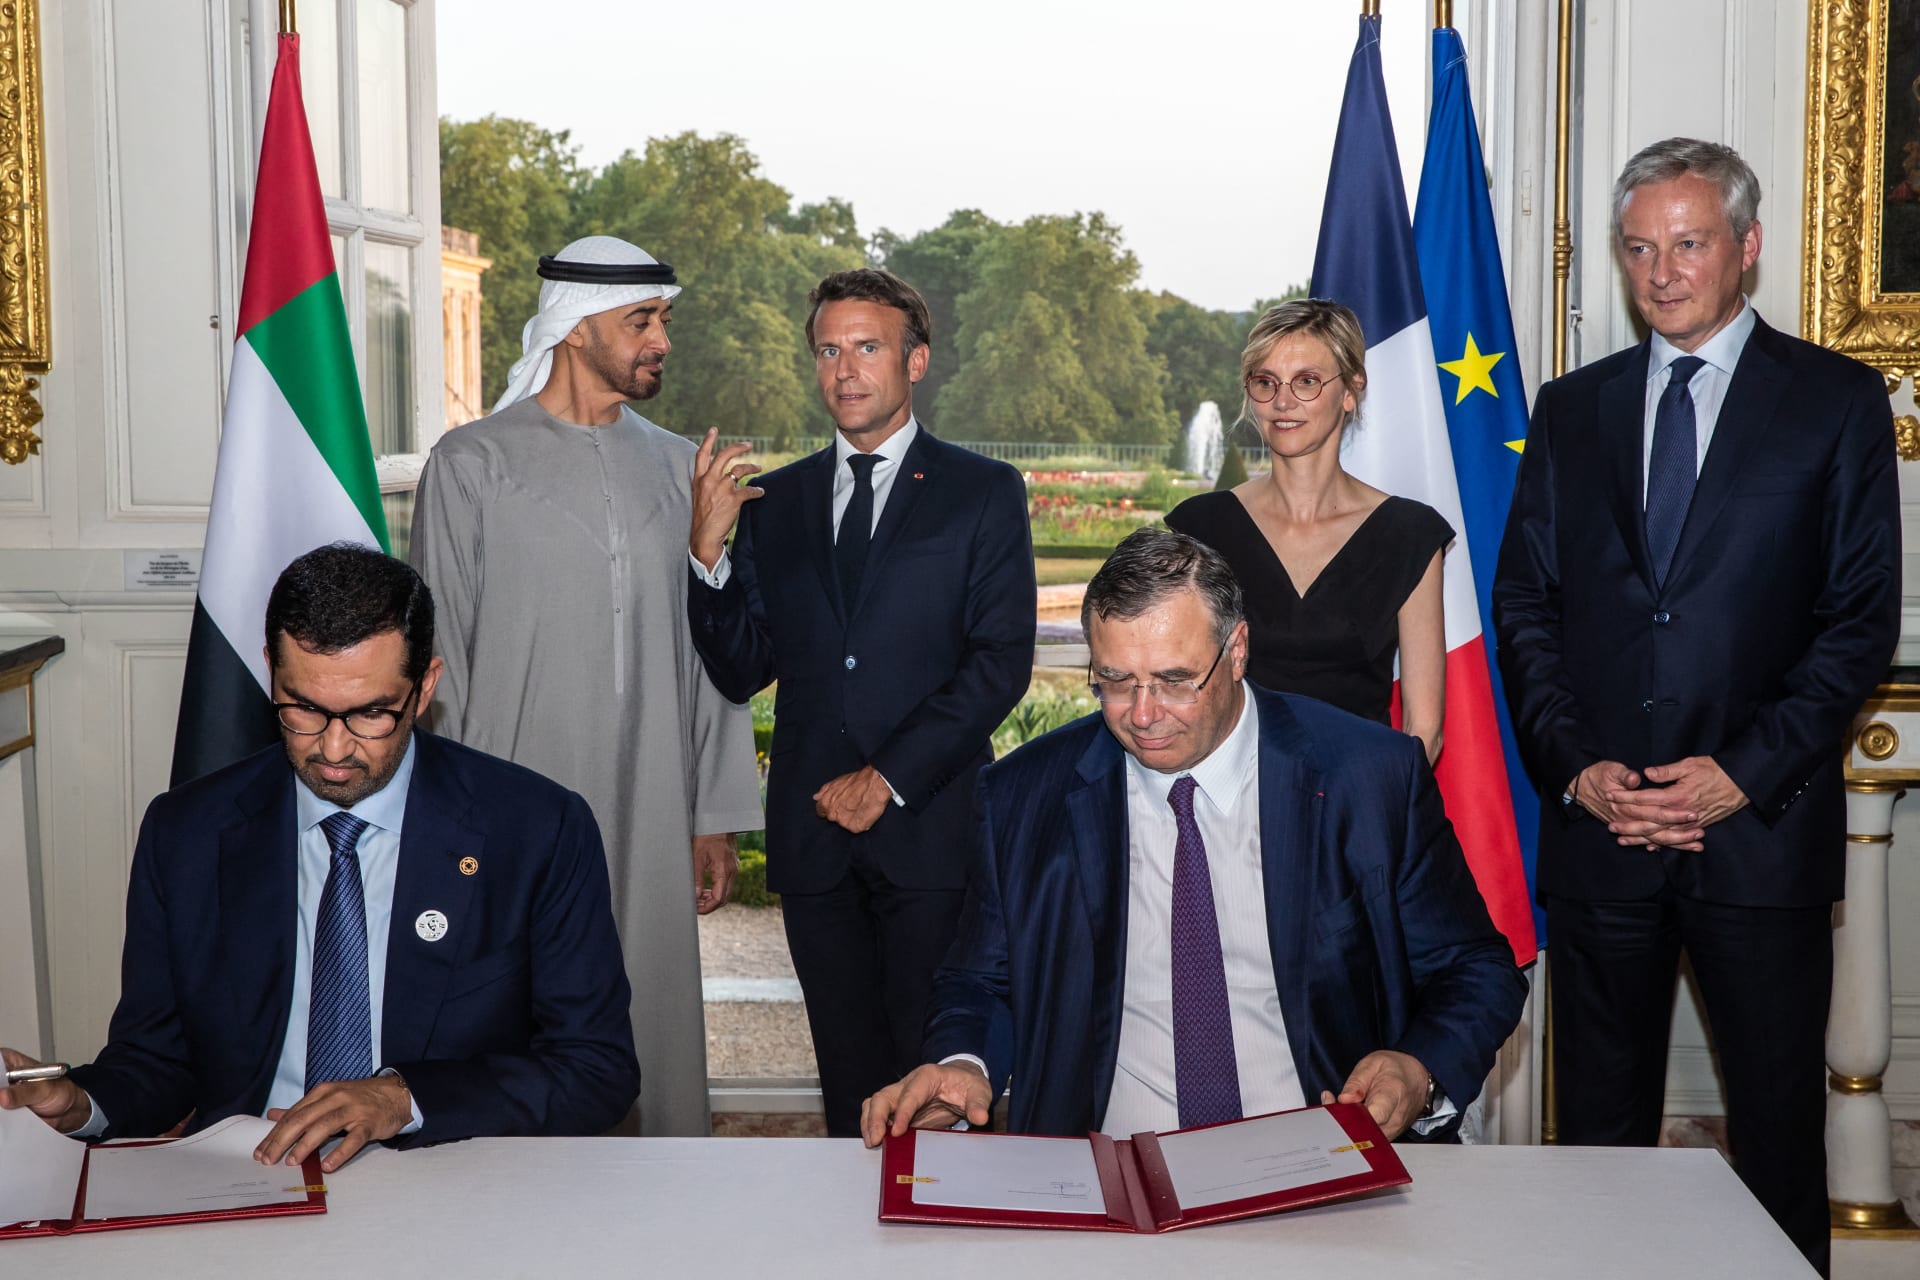 أول تعليق لمحمد بن زايد يعد توقيع اتفاقية الشراكة الاستراتيجية في مجال الطاقة مع فرنسا